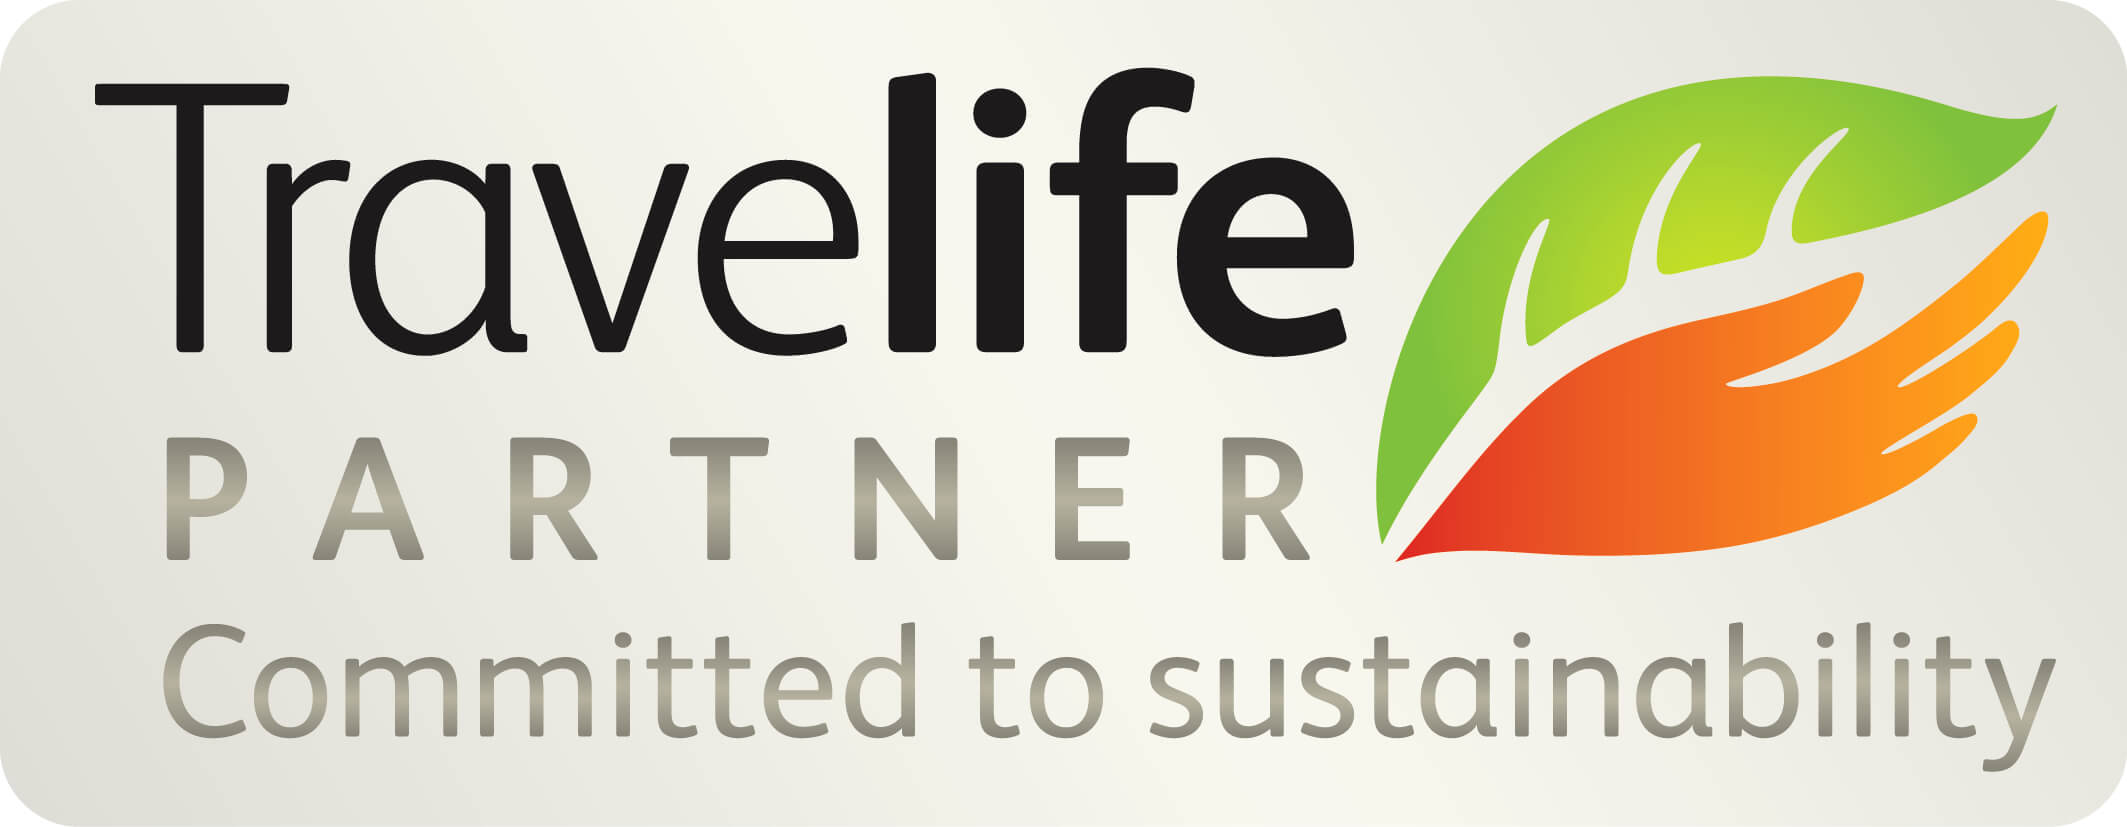 Travelife Partner Logo.jpg